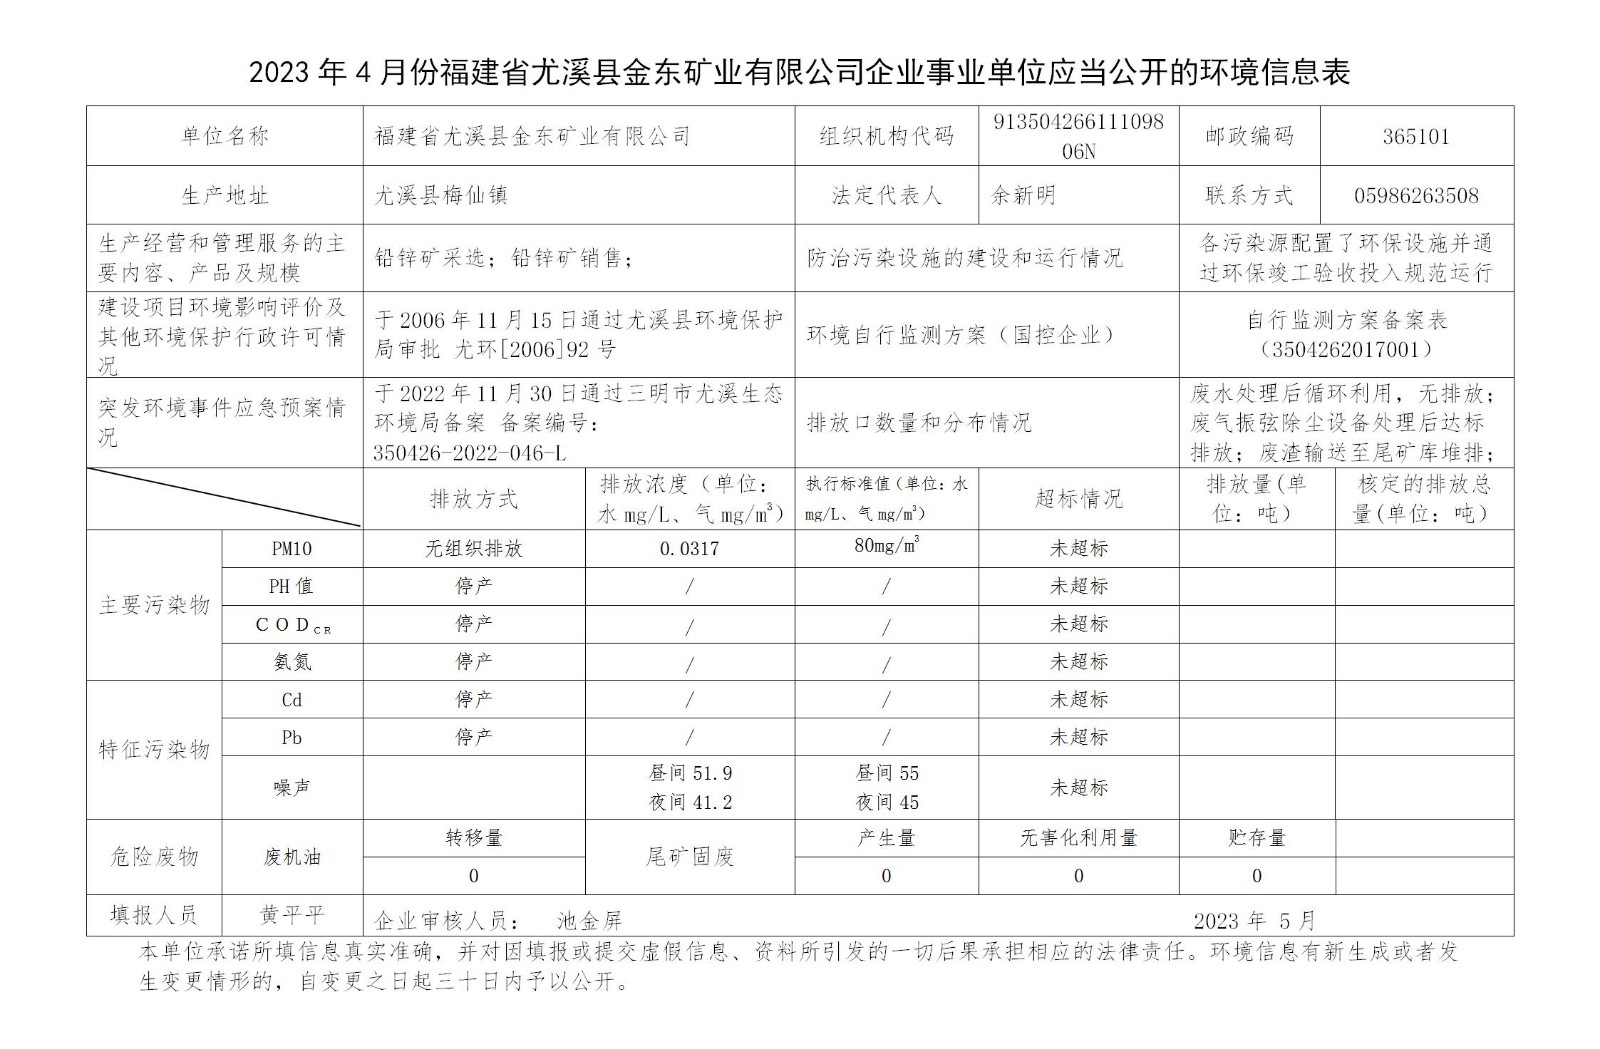 2023年4月份福建省尤溪县金东矿业有限公司企业事业单位应当公开的环境信息表_01.jpg